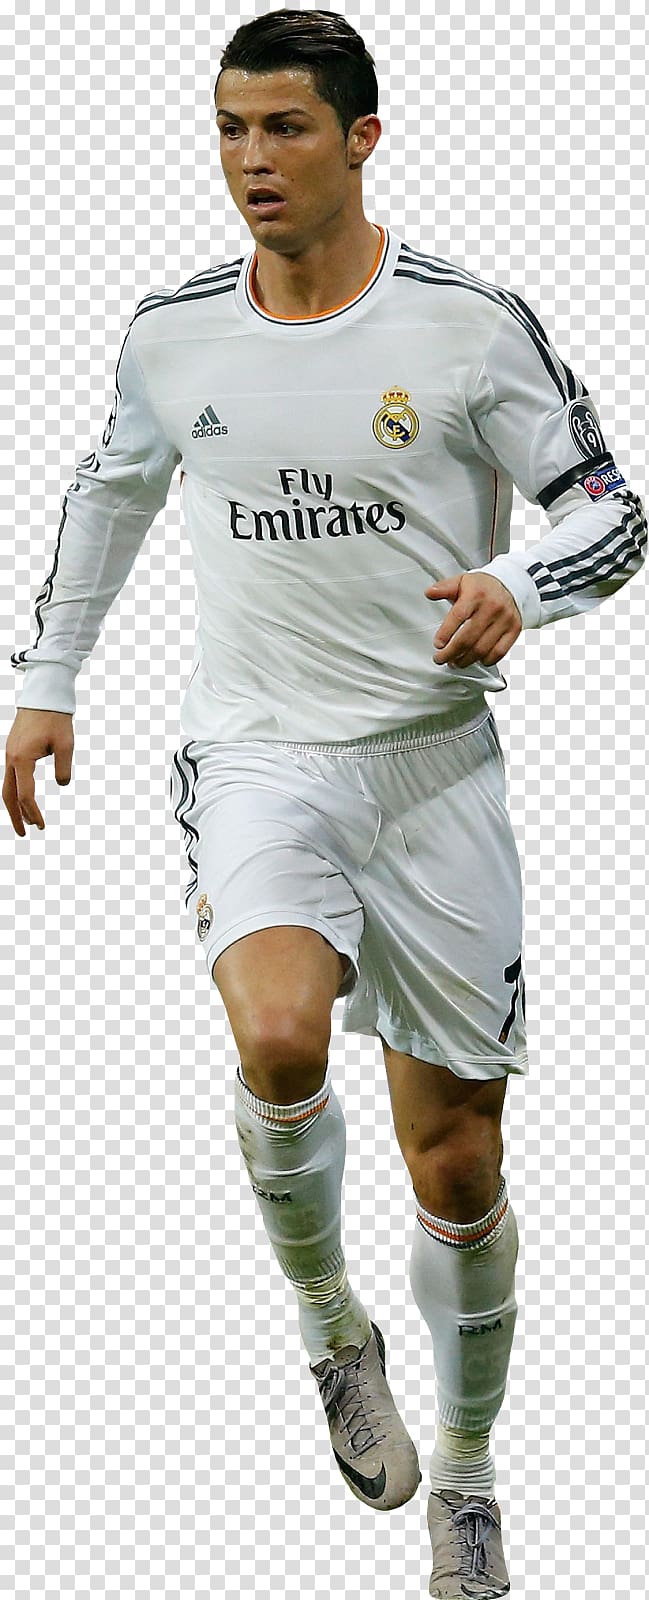 Cristiano Ronaldo Football player Sport Shoe, cristiano ronaldo transparent background PNG clipart